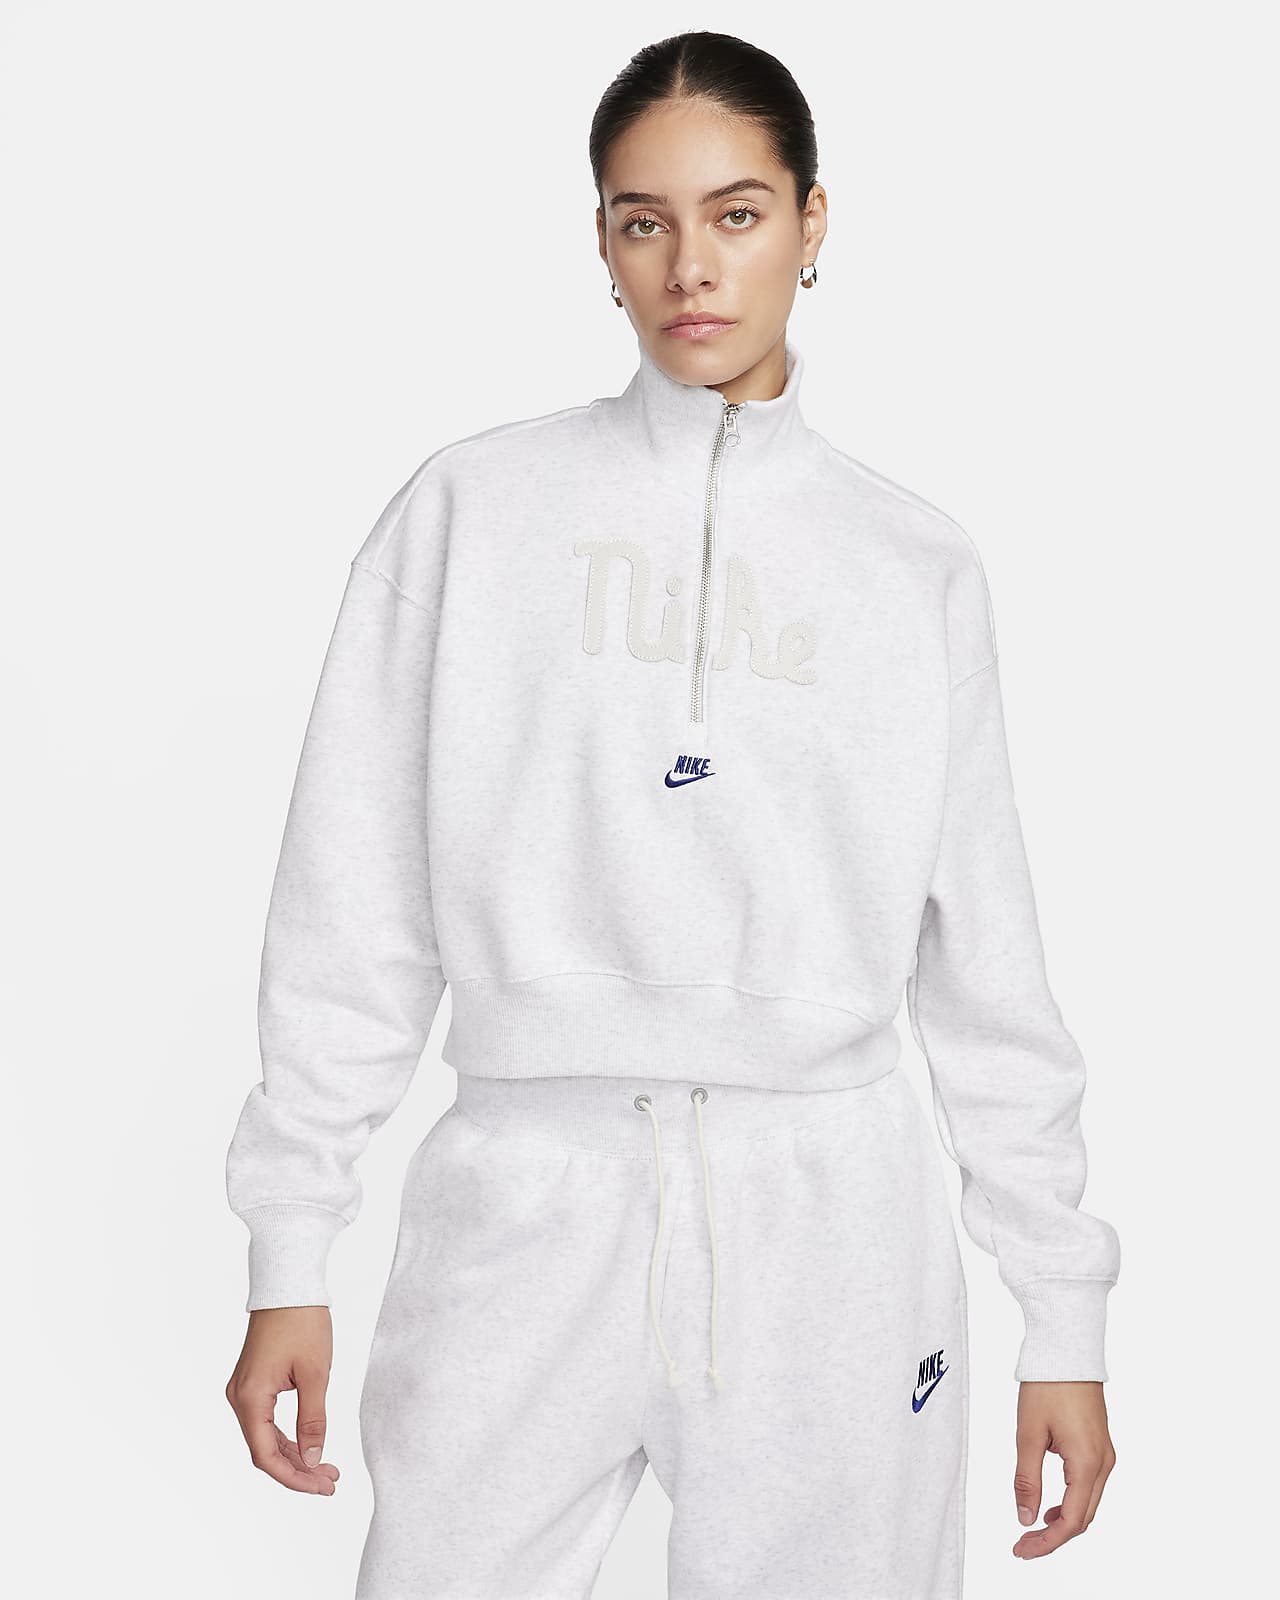 Nike WOMEN'S Sportswear REVERSIBLE Crop Crew Sweatshirt SIZE